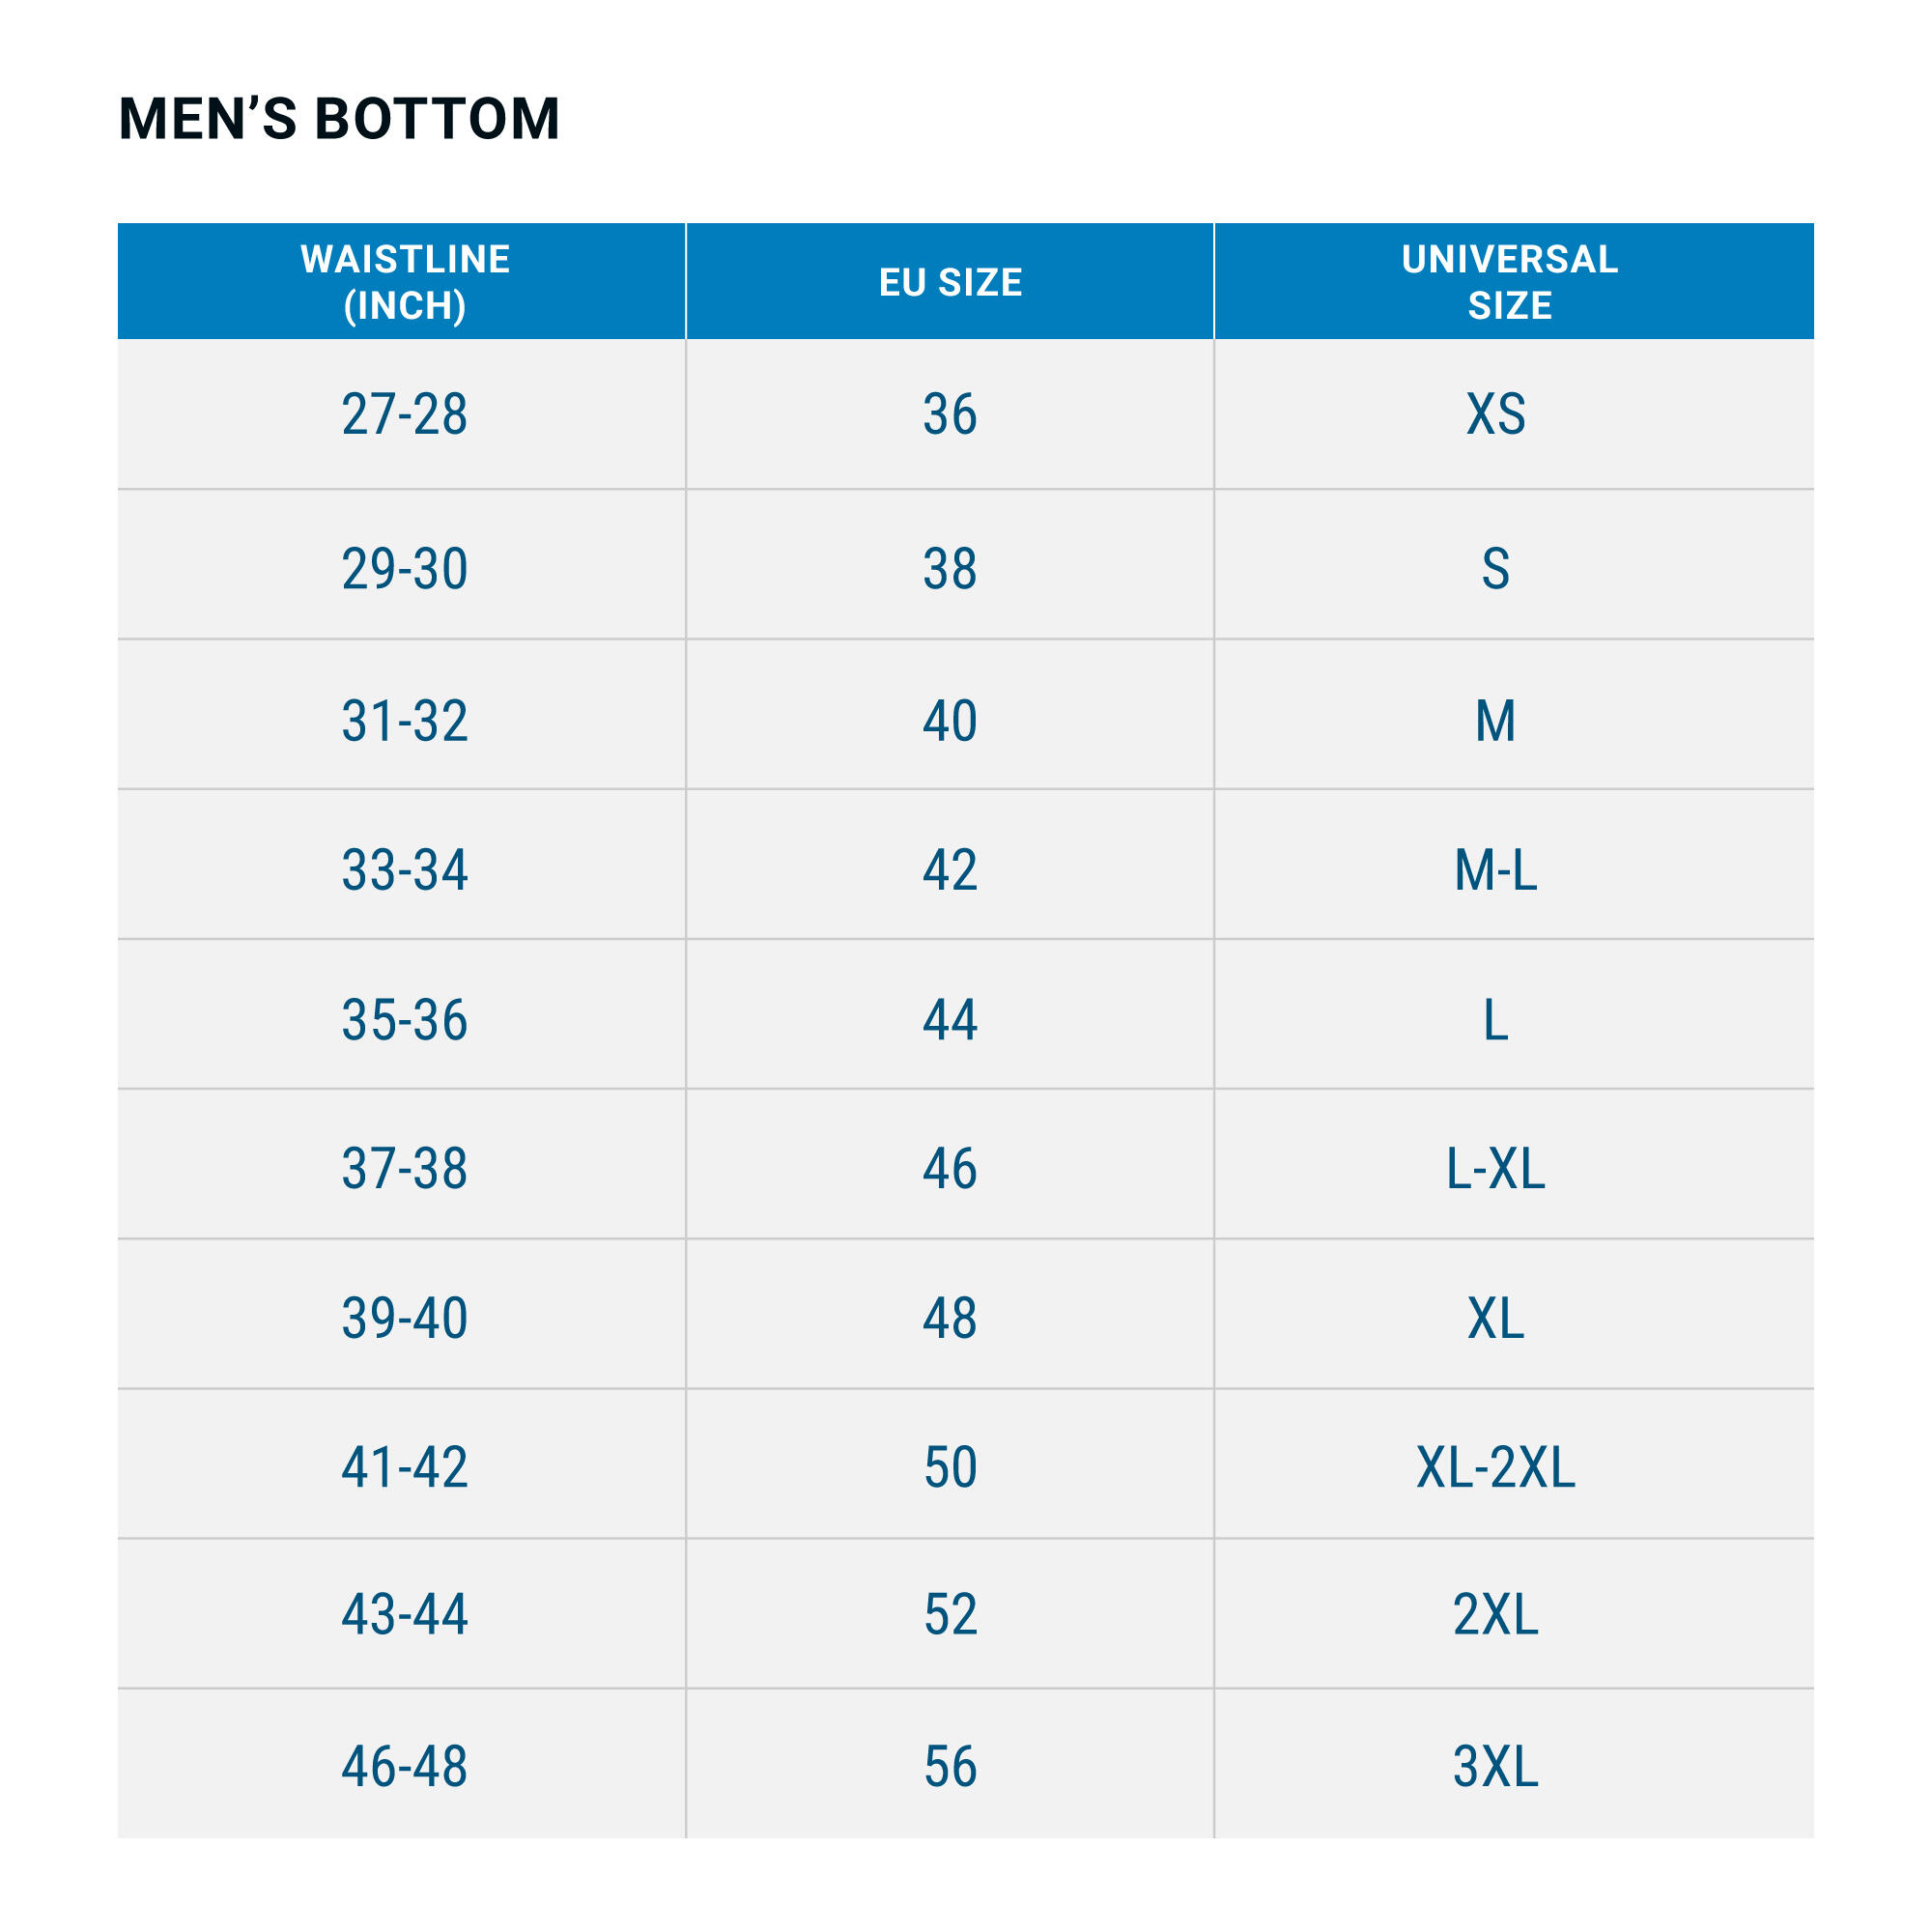 Decathlon size guide uk women's